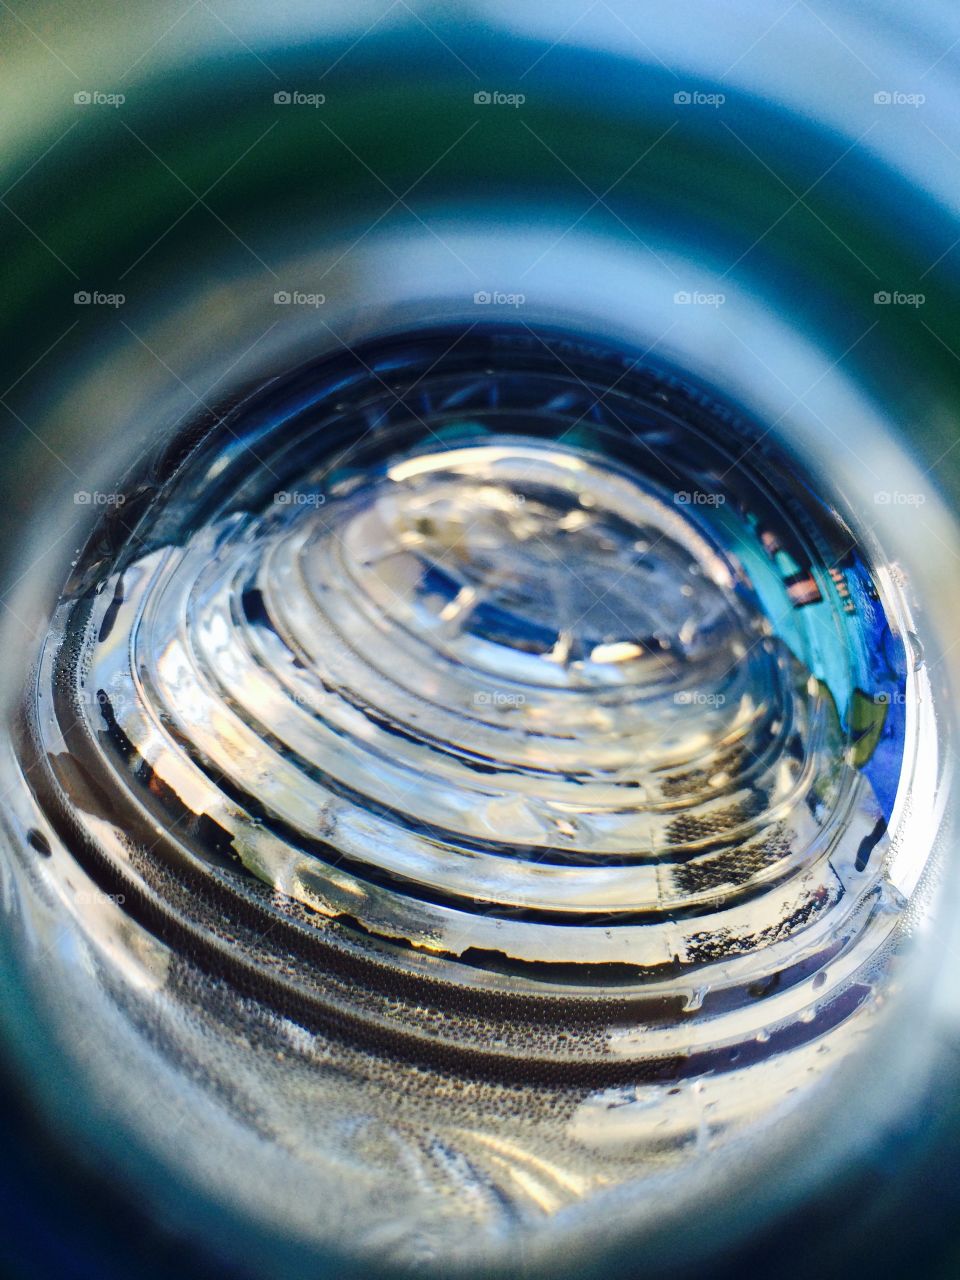 Inside my water bottle 